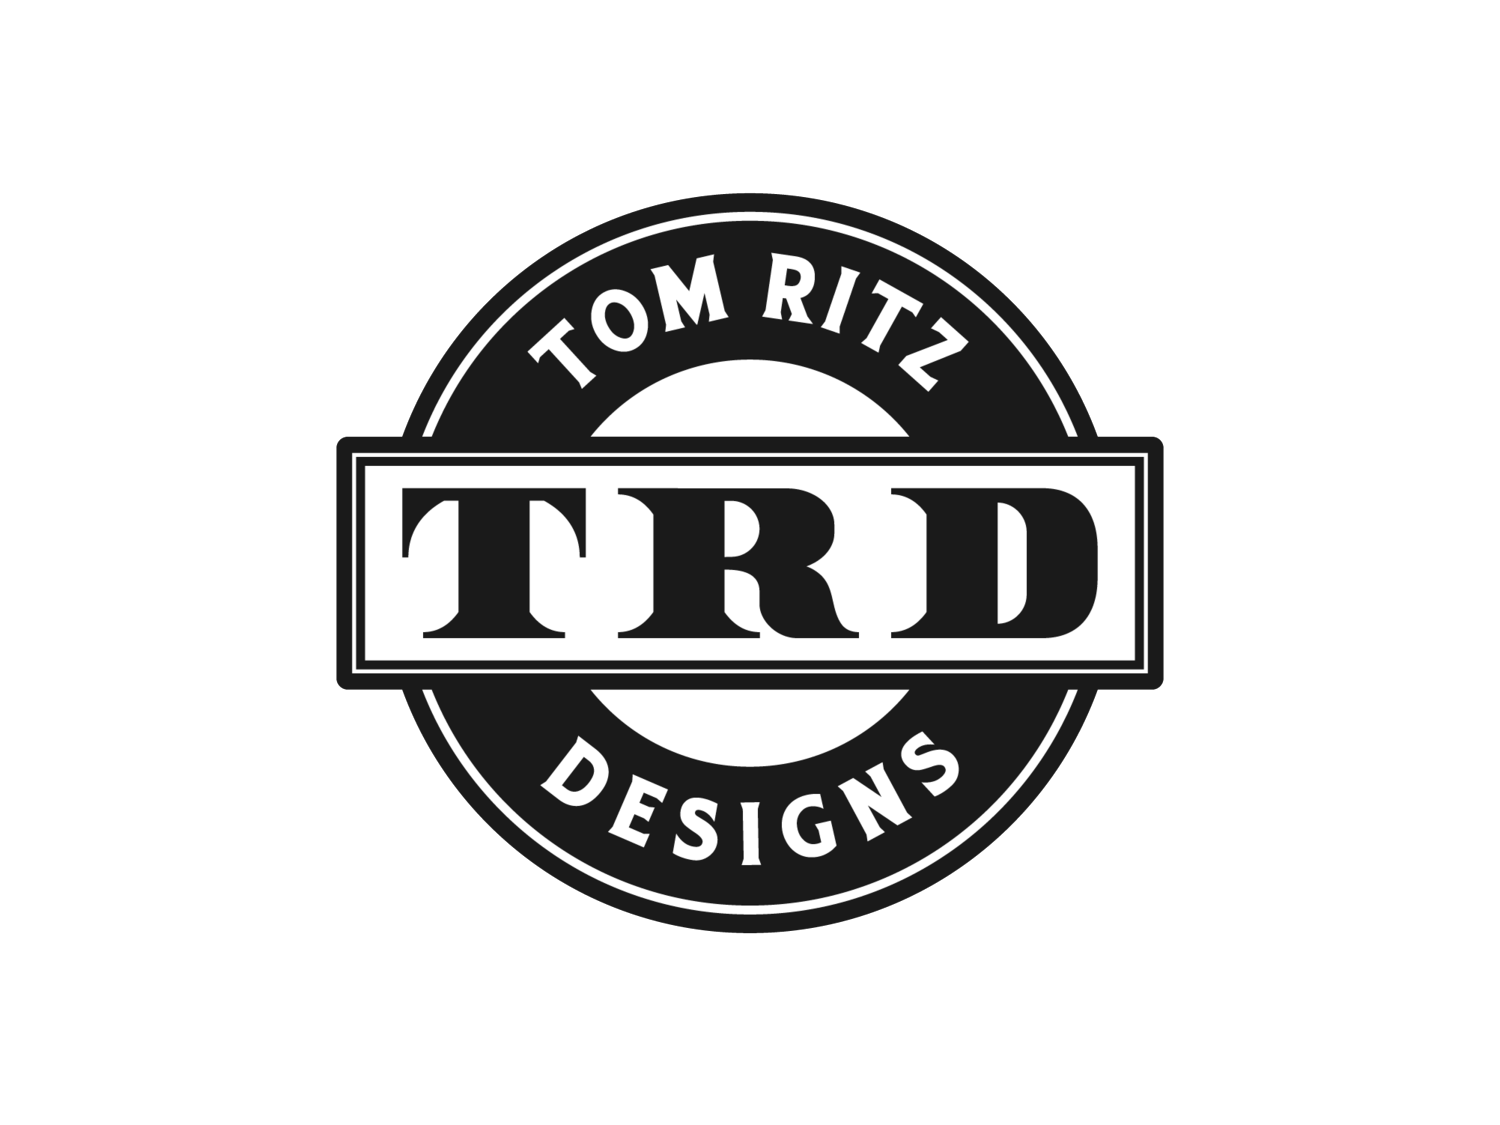 Tom Ritz Designs